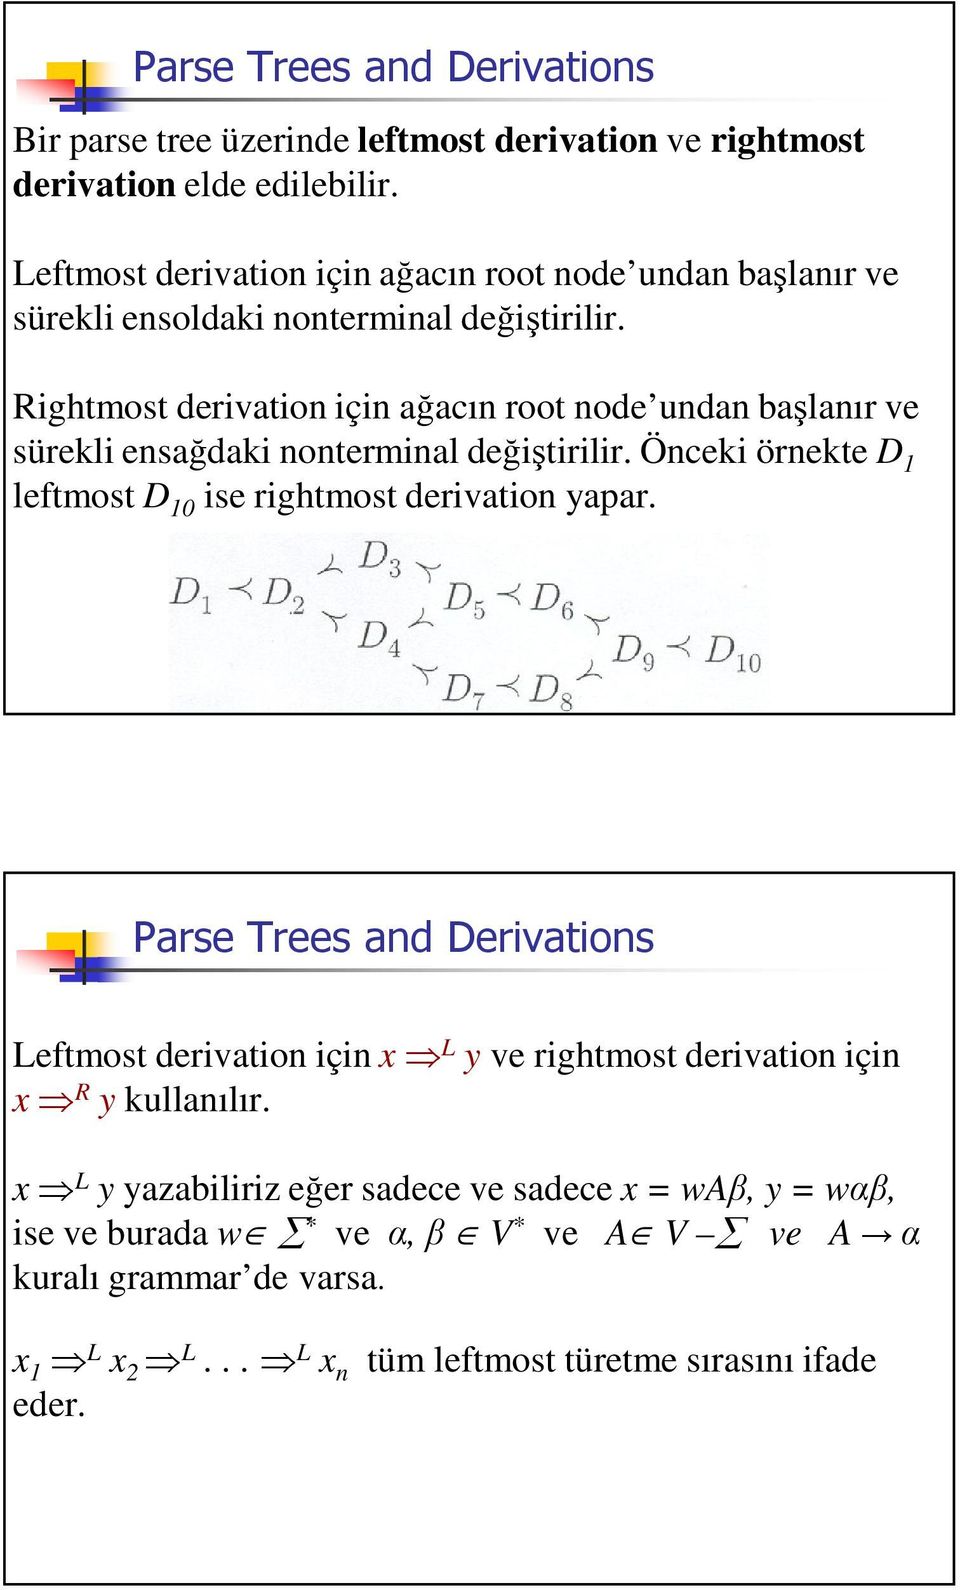 Rightmost derivation için aacın root node undan balanır ve sürekli ensadaki nonterminal deitirilir.